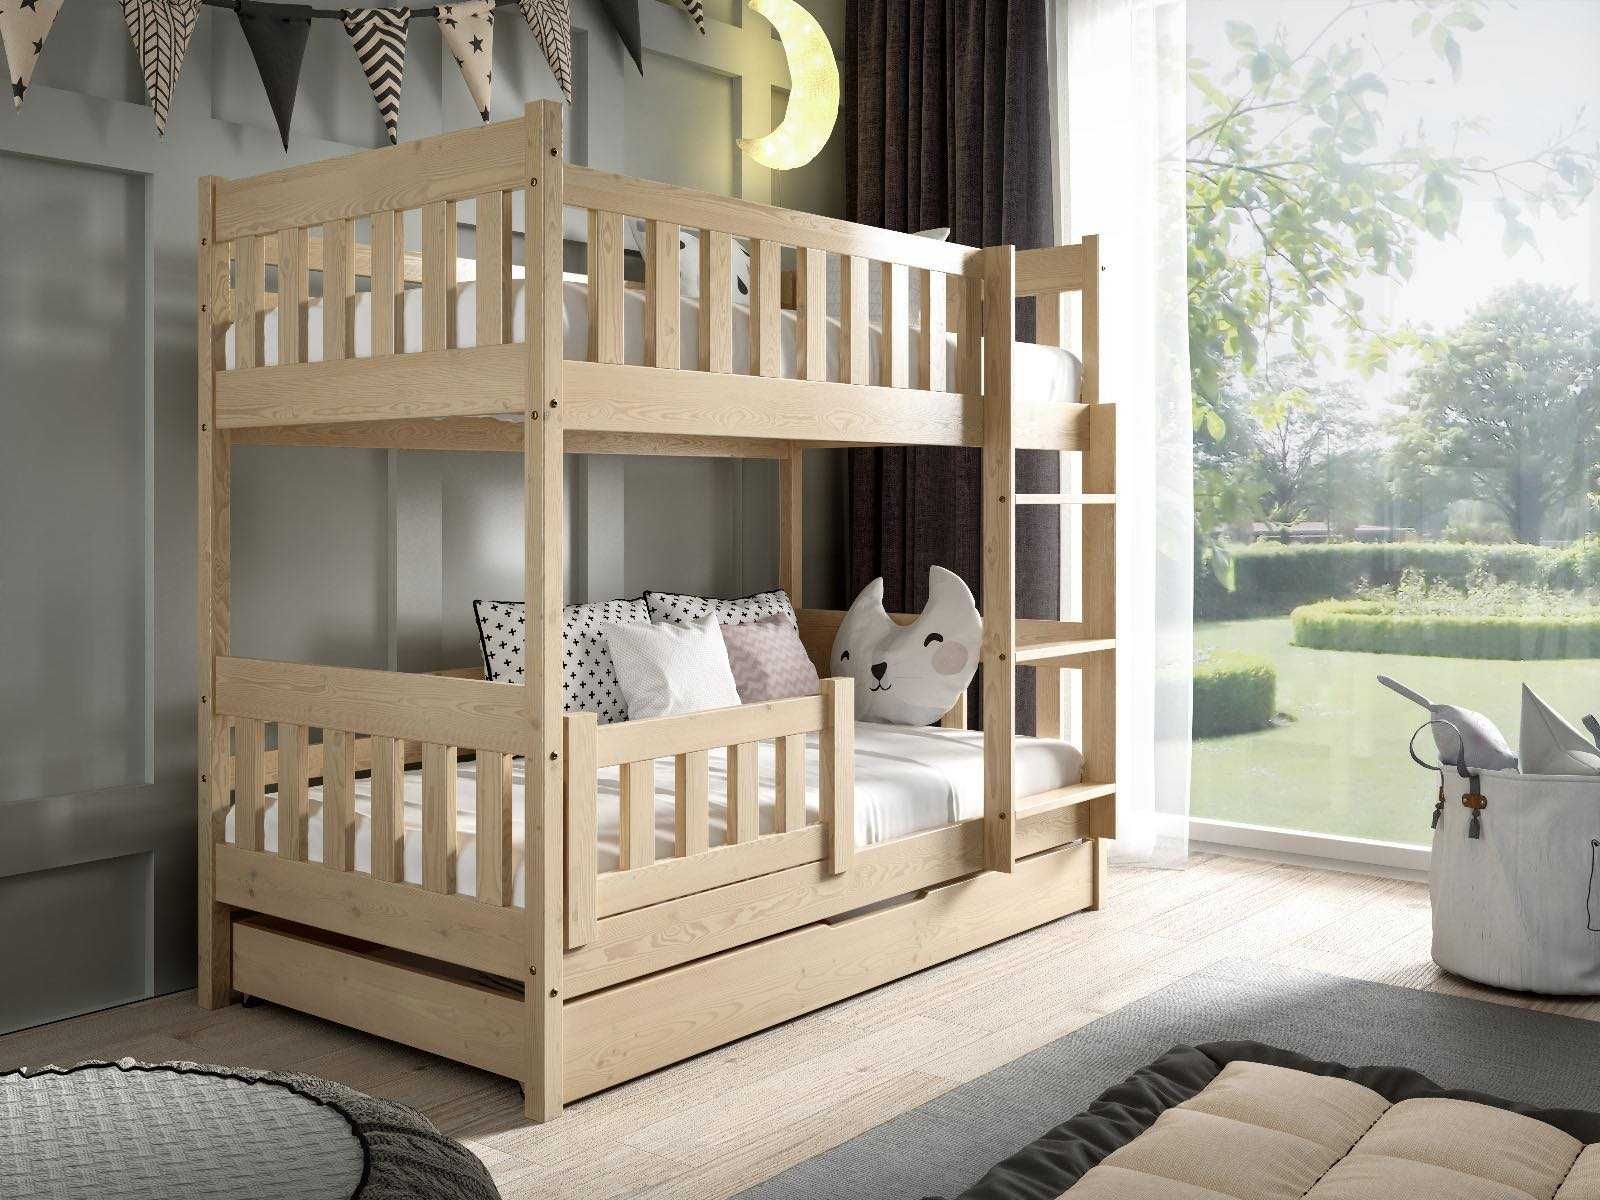 Łóżko dla 2 dzieci sosnowe piętrowe LILA - 160x80 materace GRATIS